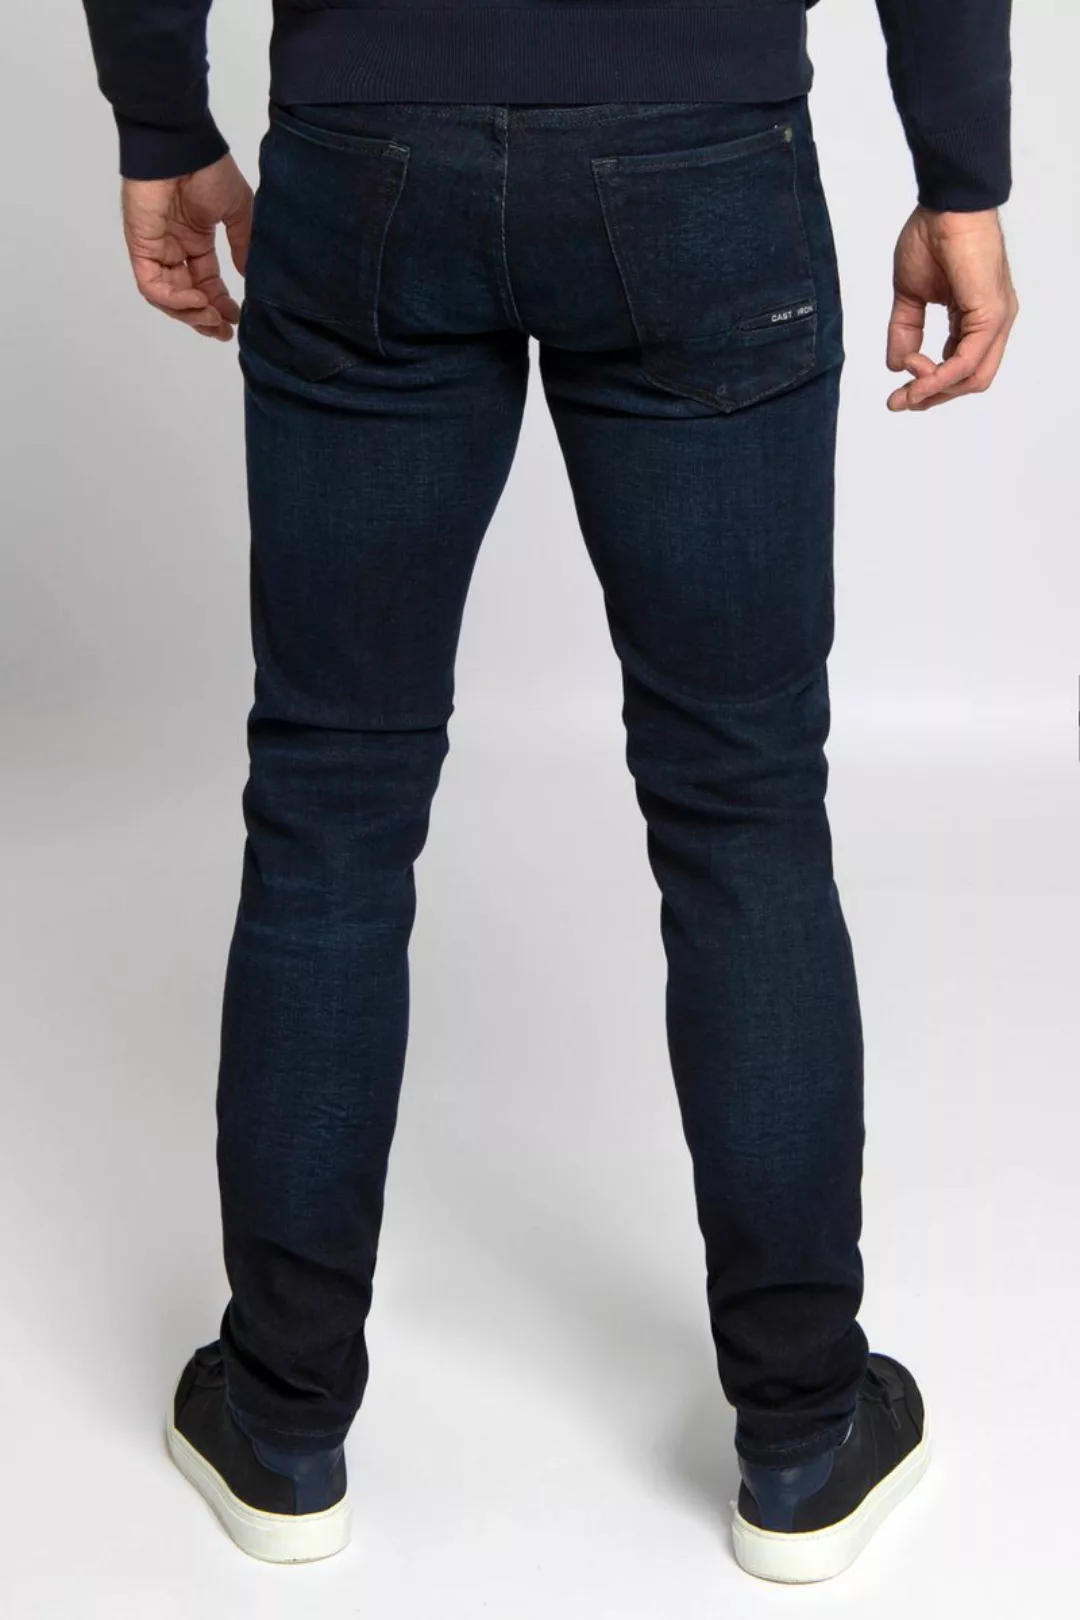 Cast Iron Riser Jeans Dunkelblau - Größe W 36 - L 34 günstig online kaufen